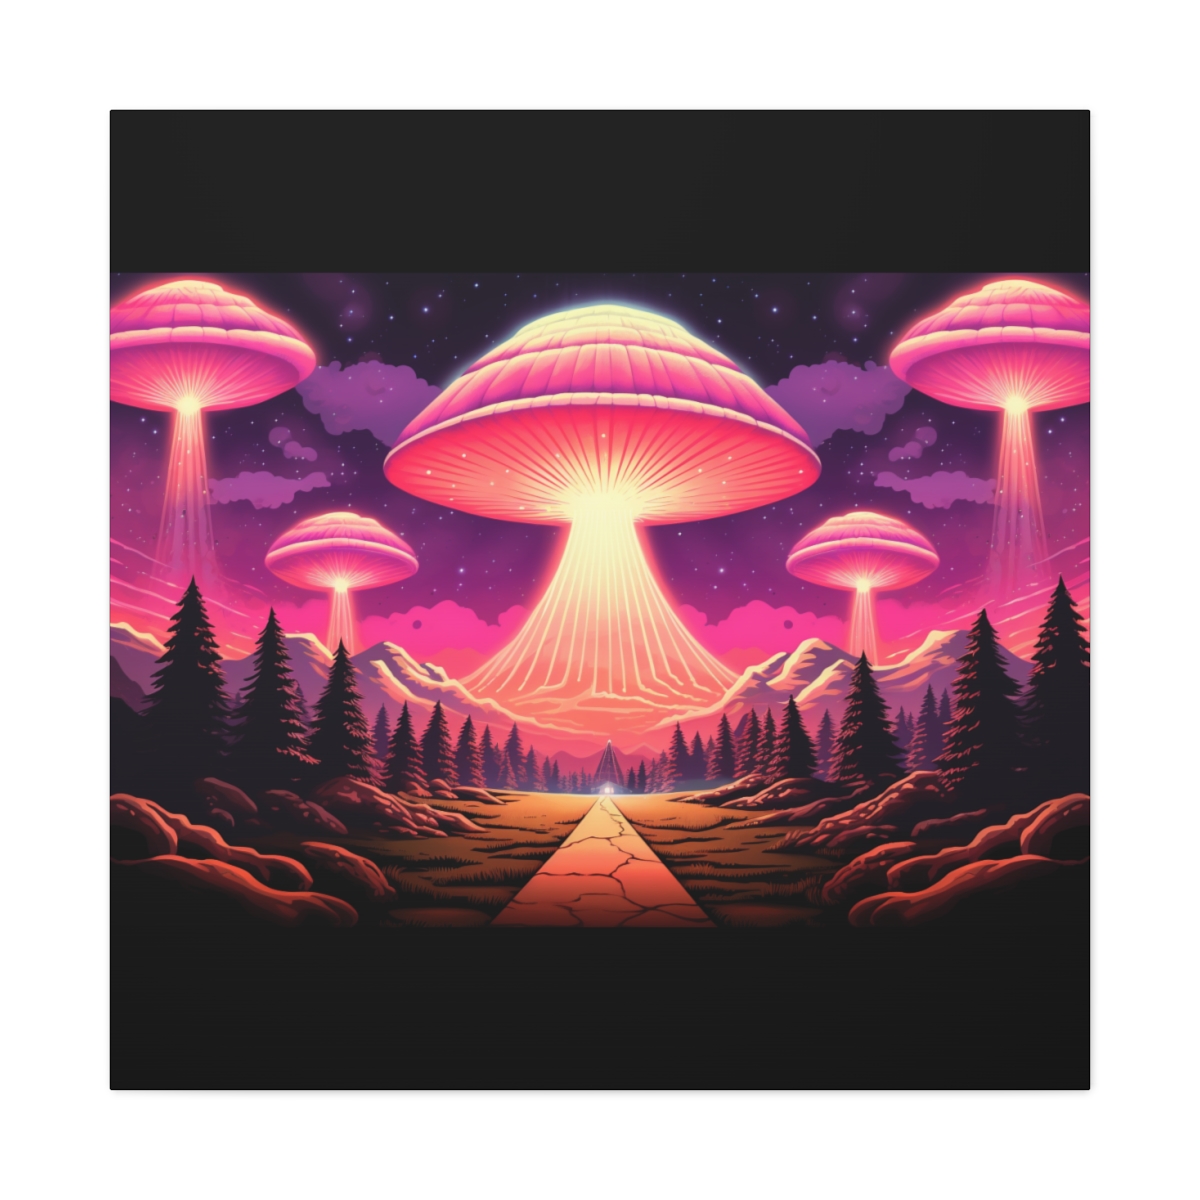 Trippy Fantasy Mushroom Art: River Of Bliss